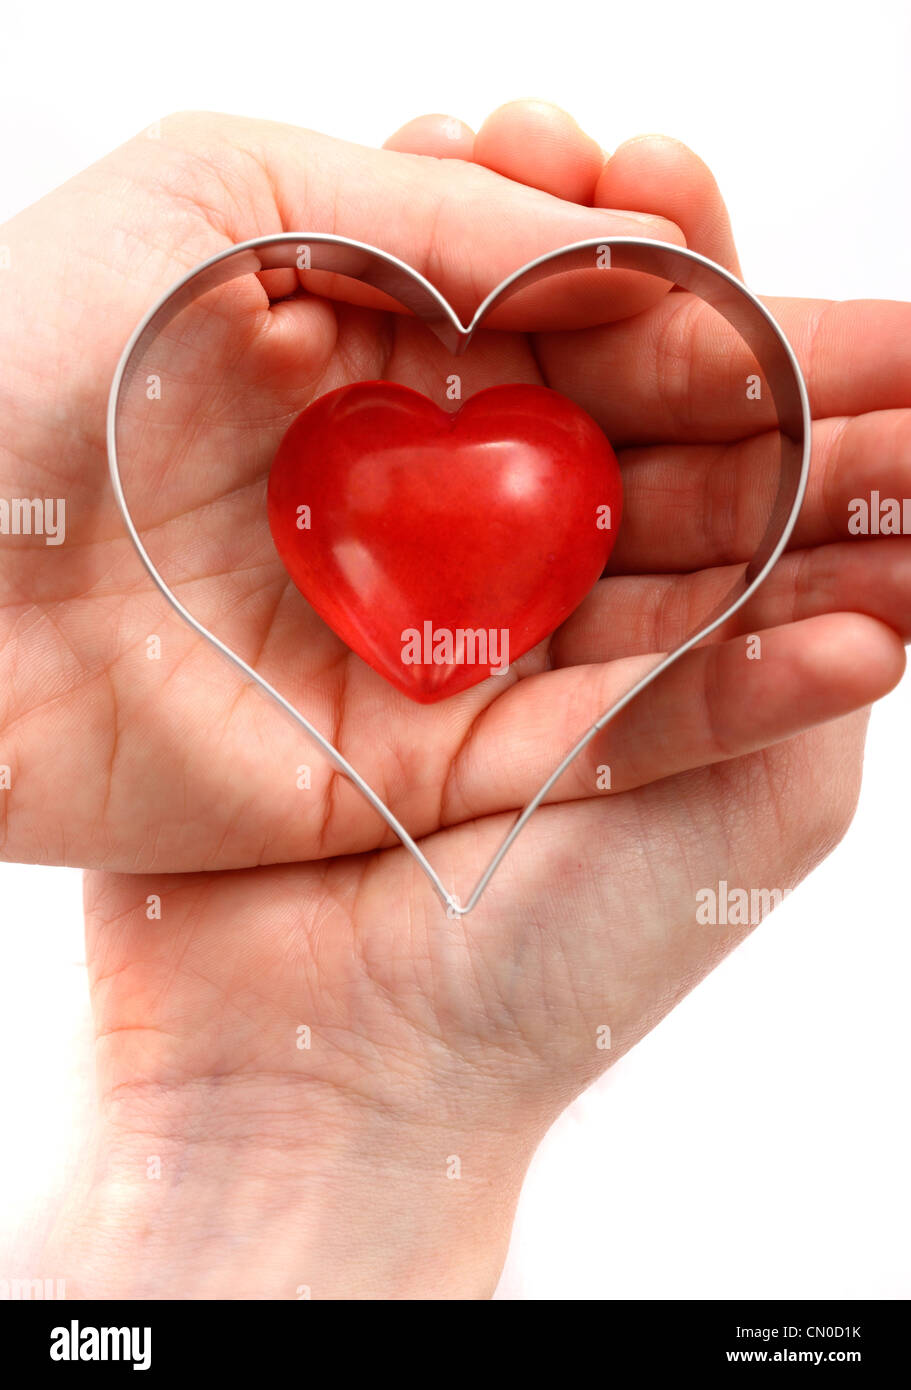 Imagen simbólica, enfermedad cardíaca, ataque al corazón, la protección, la prevención, la cardiología. Manos sosteniendo un corazón rojo. Foto de stock